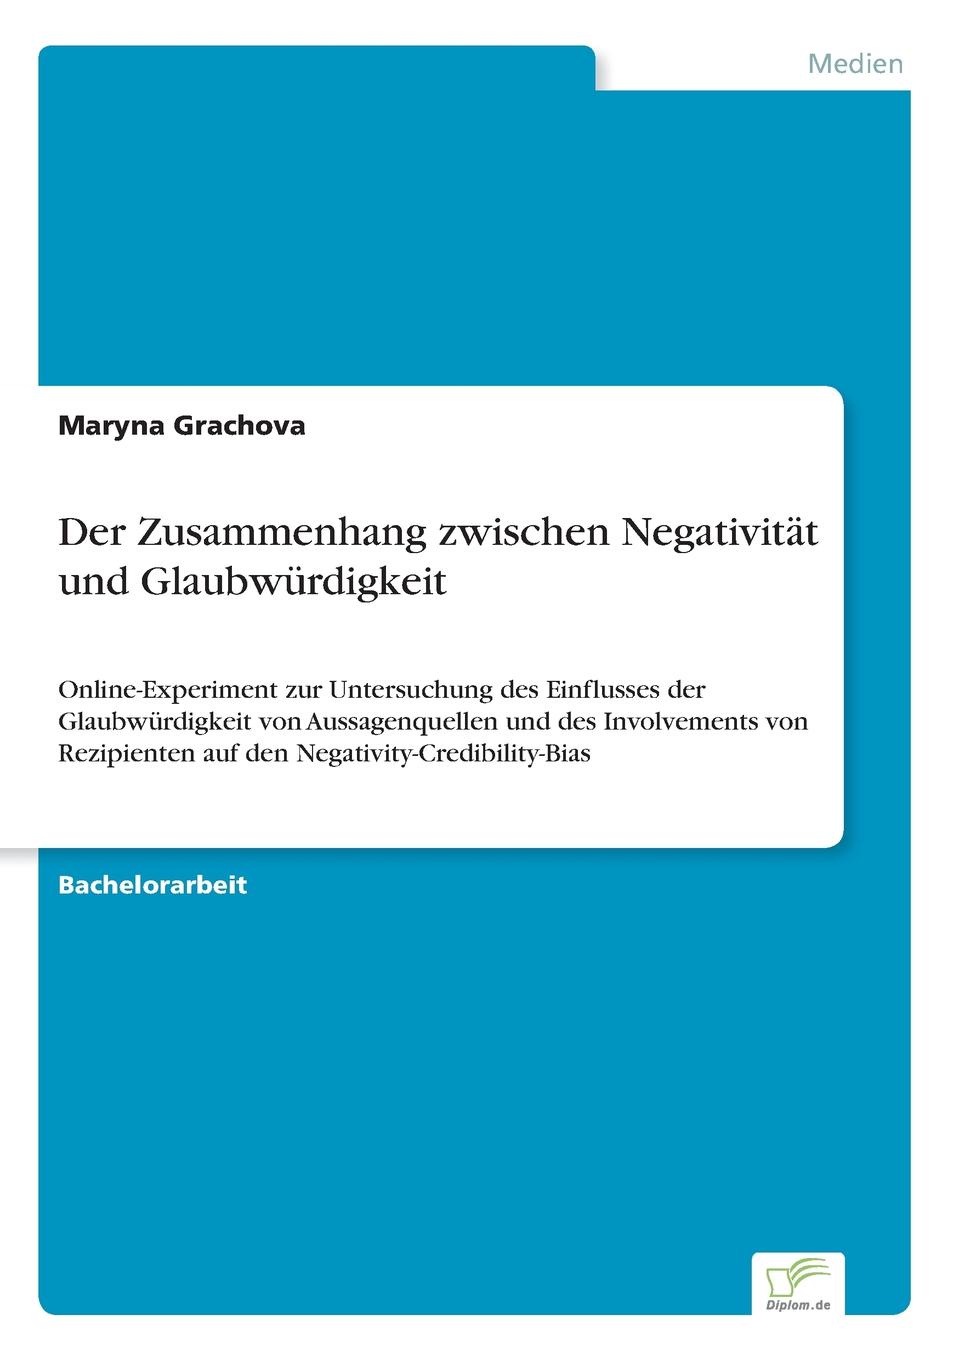 Maryna Grachova Der Zusammenhang zwischen Negativitat und Glaubwurdigkeit